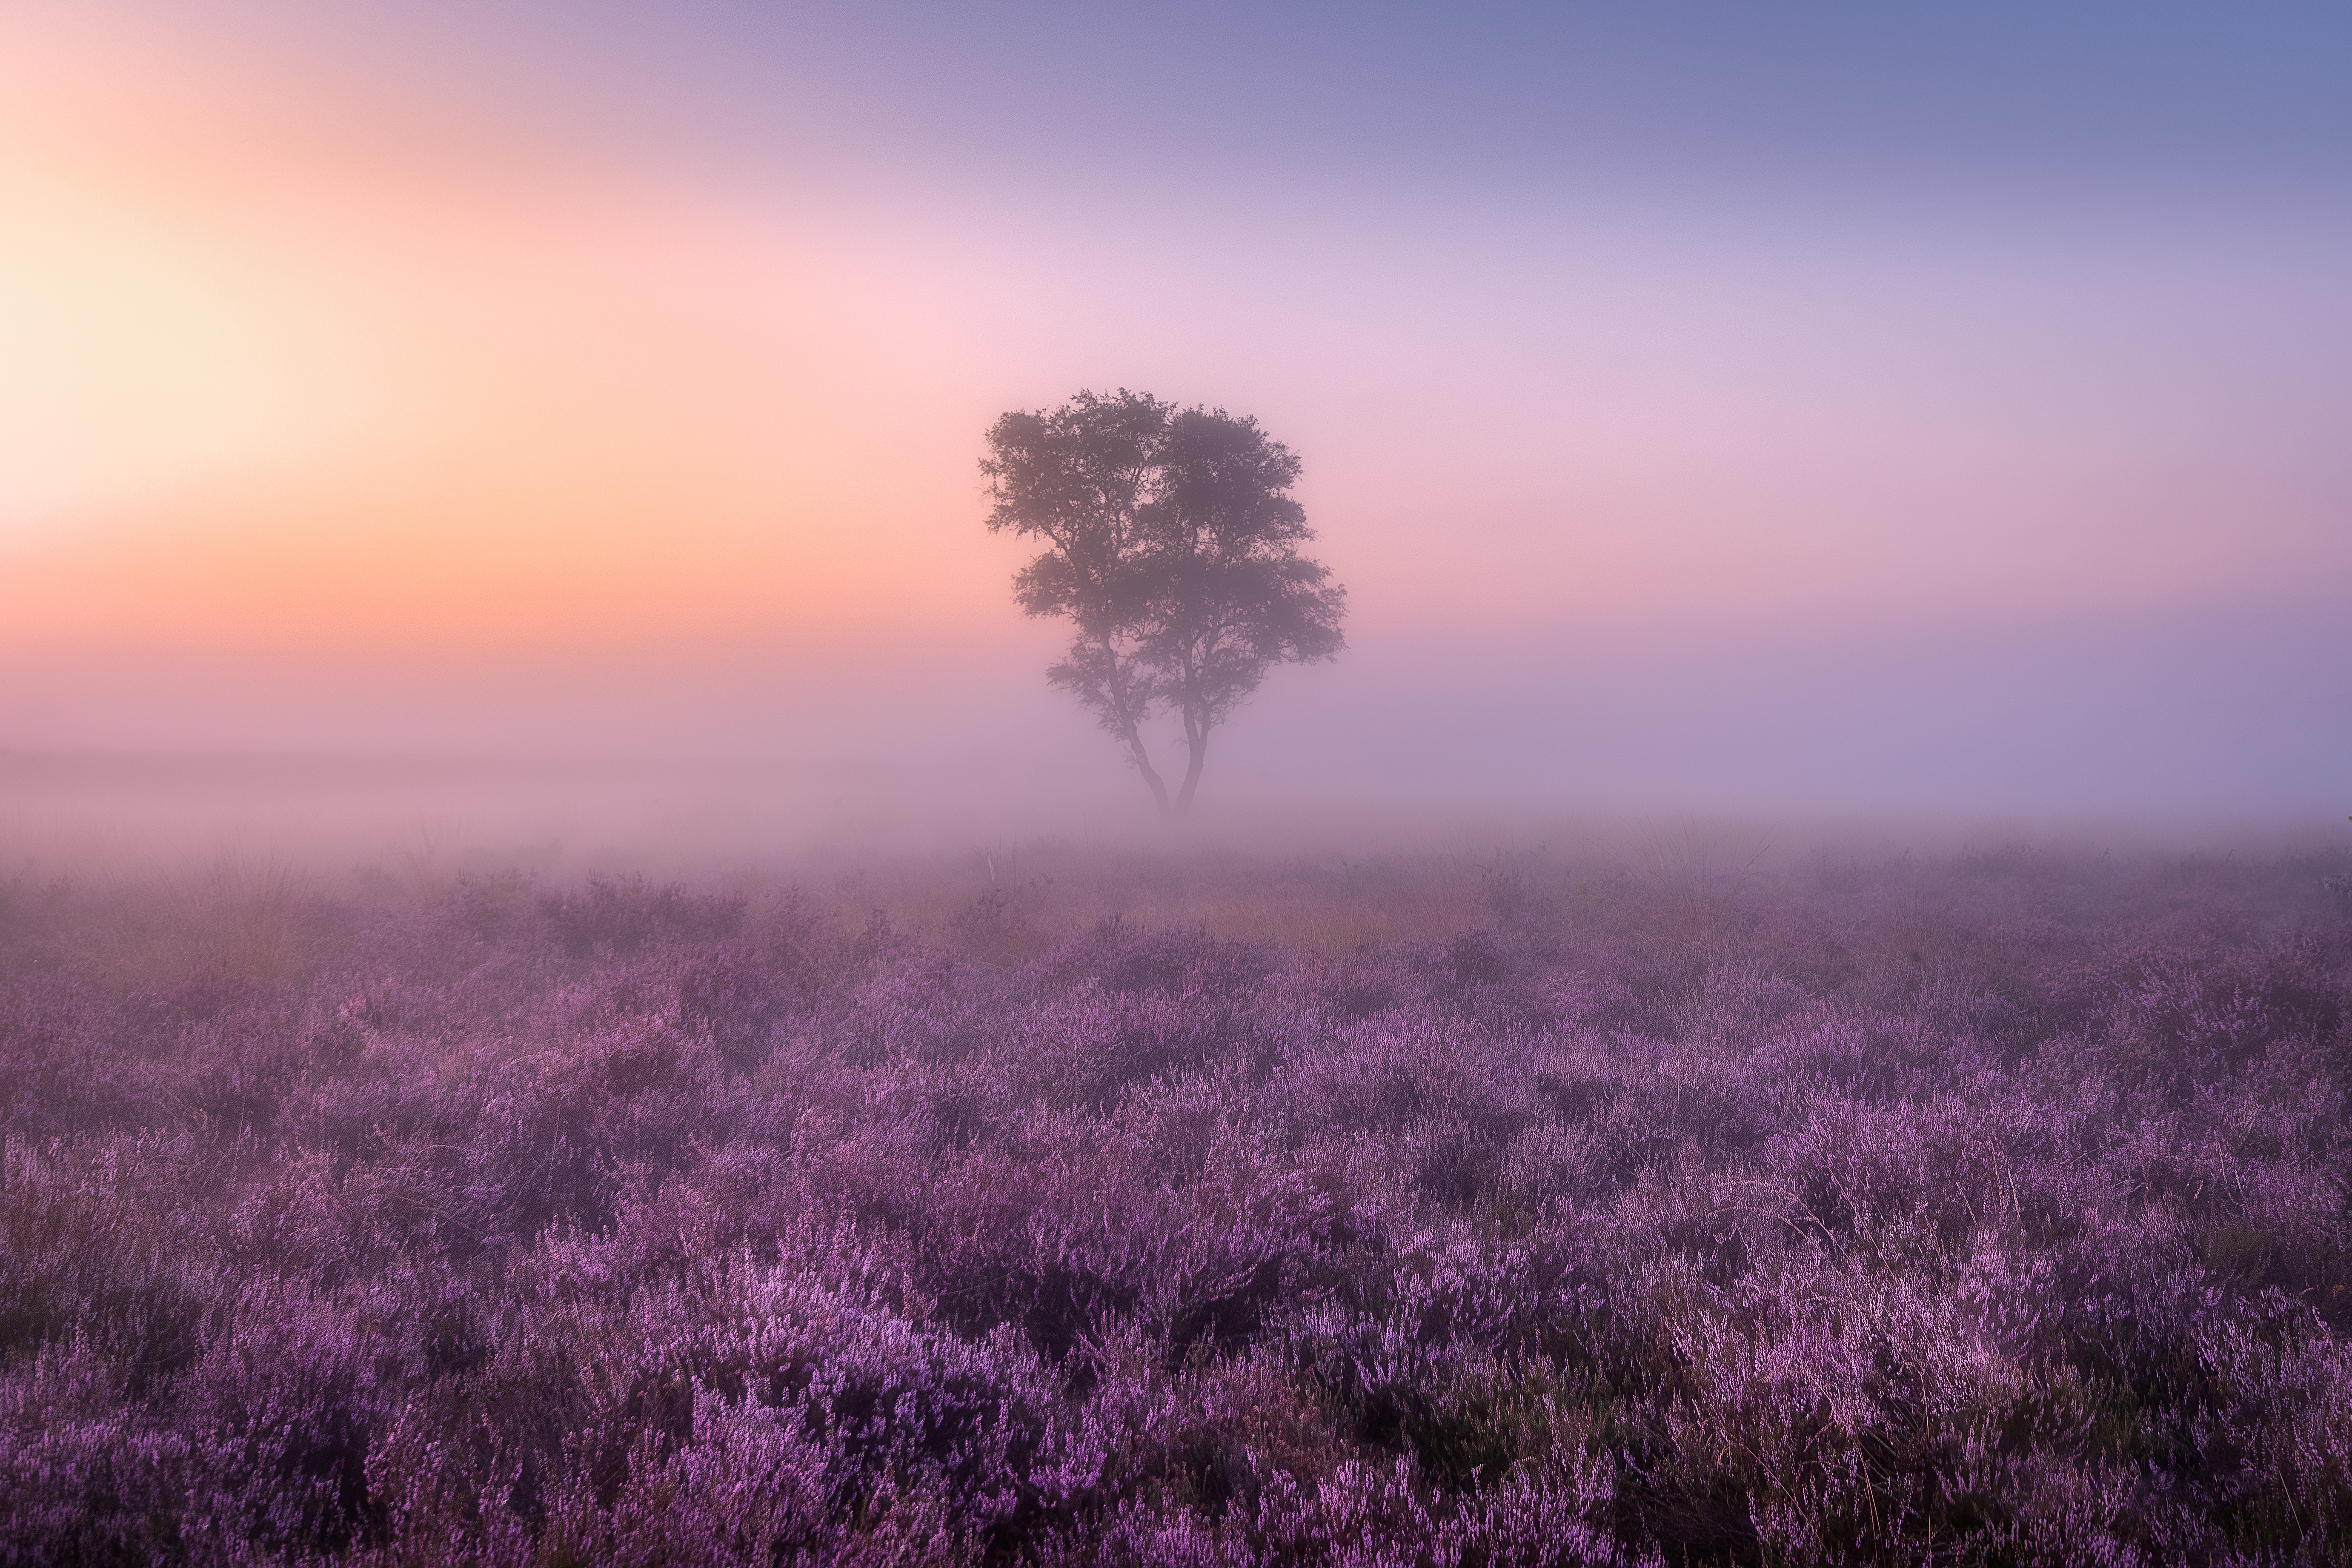 HD wallpaper, Landscape, Aesthetic, Foggy, Tree, Lavender Fields, 5K, Purple, Sunrise